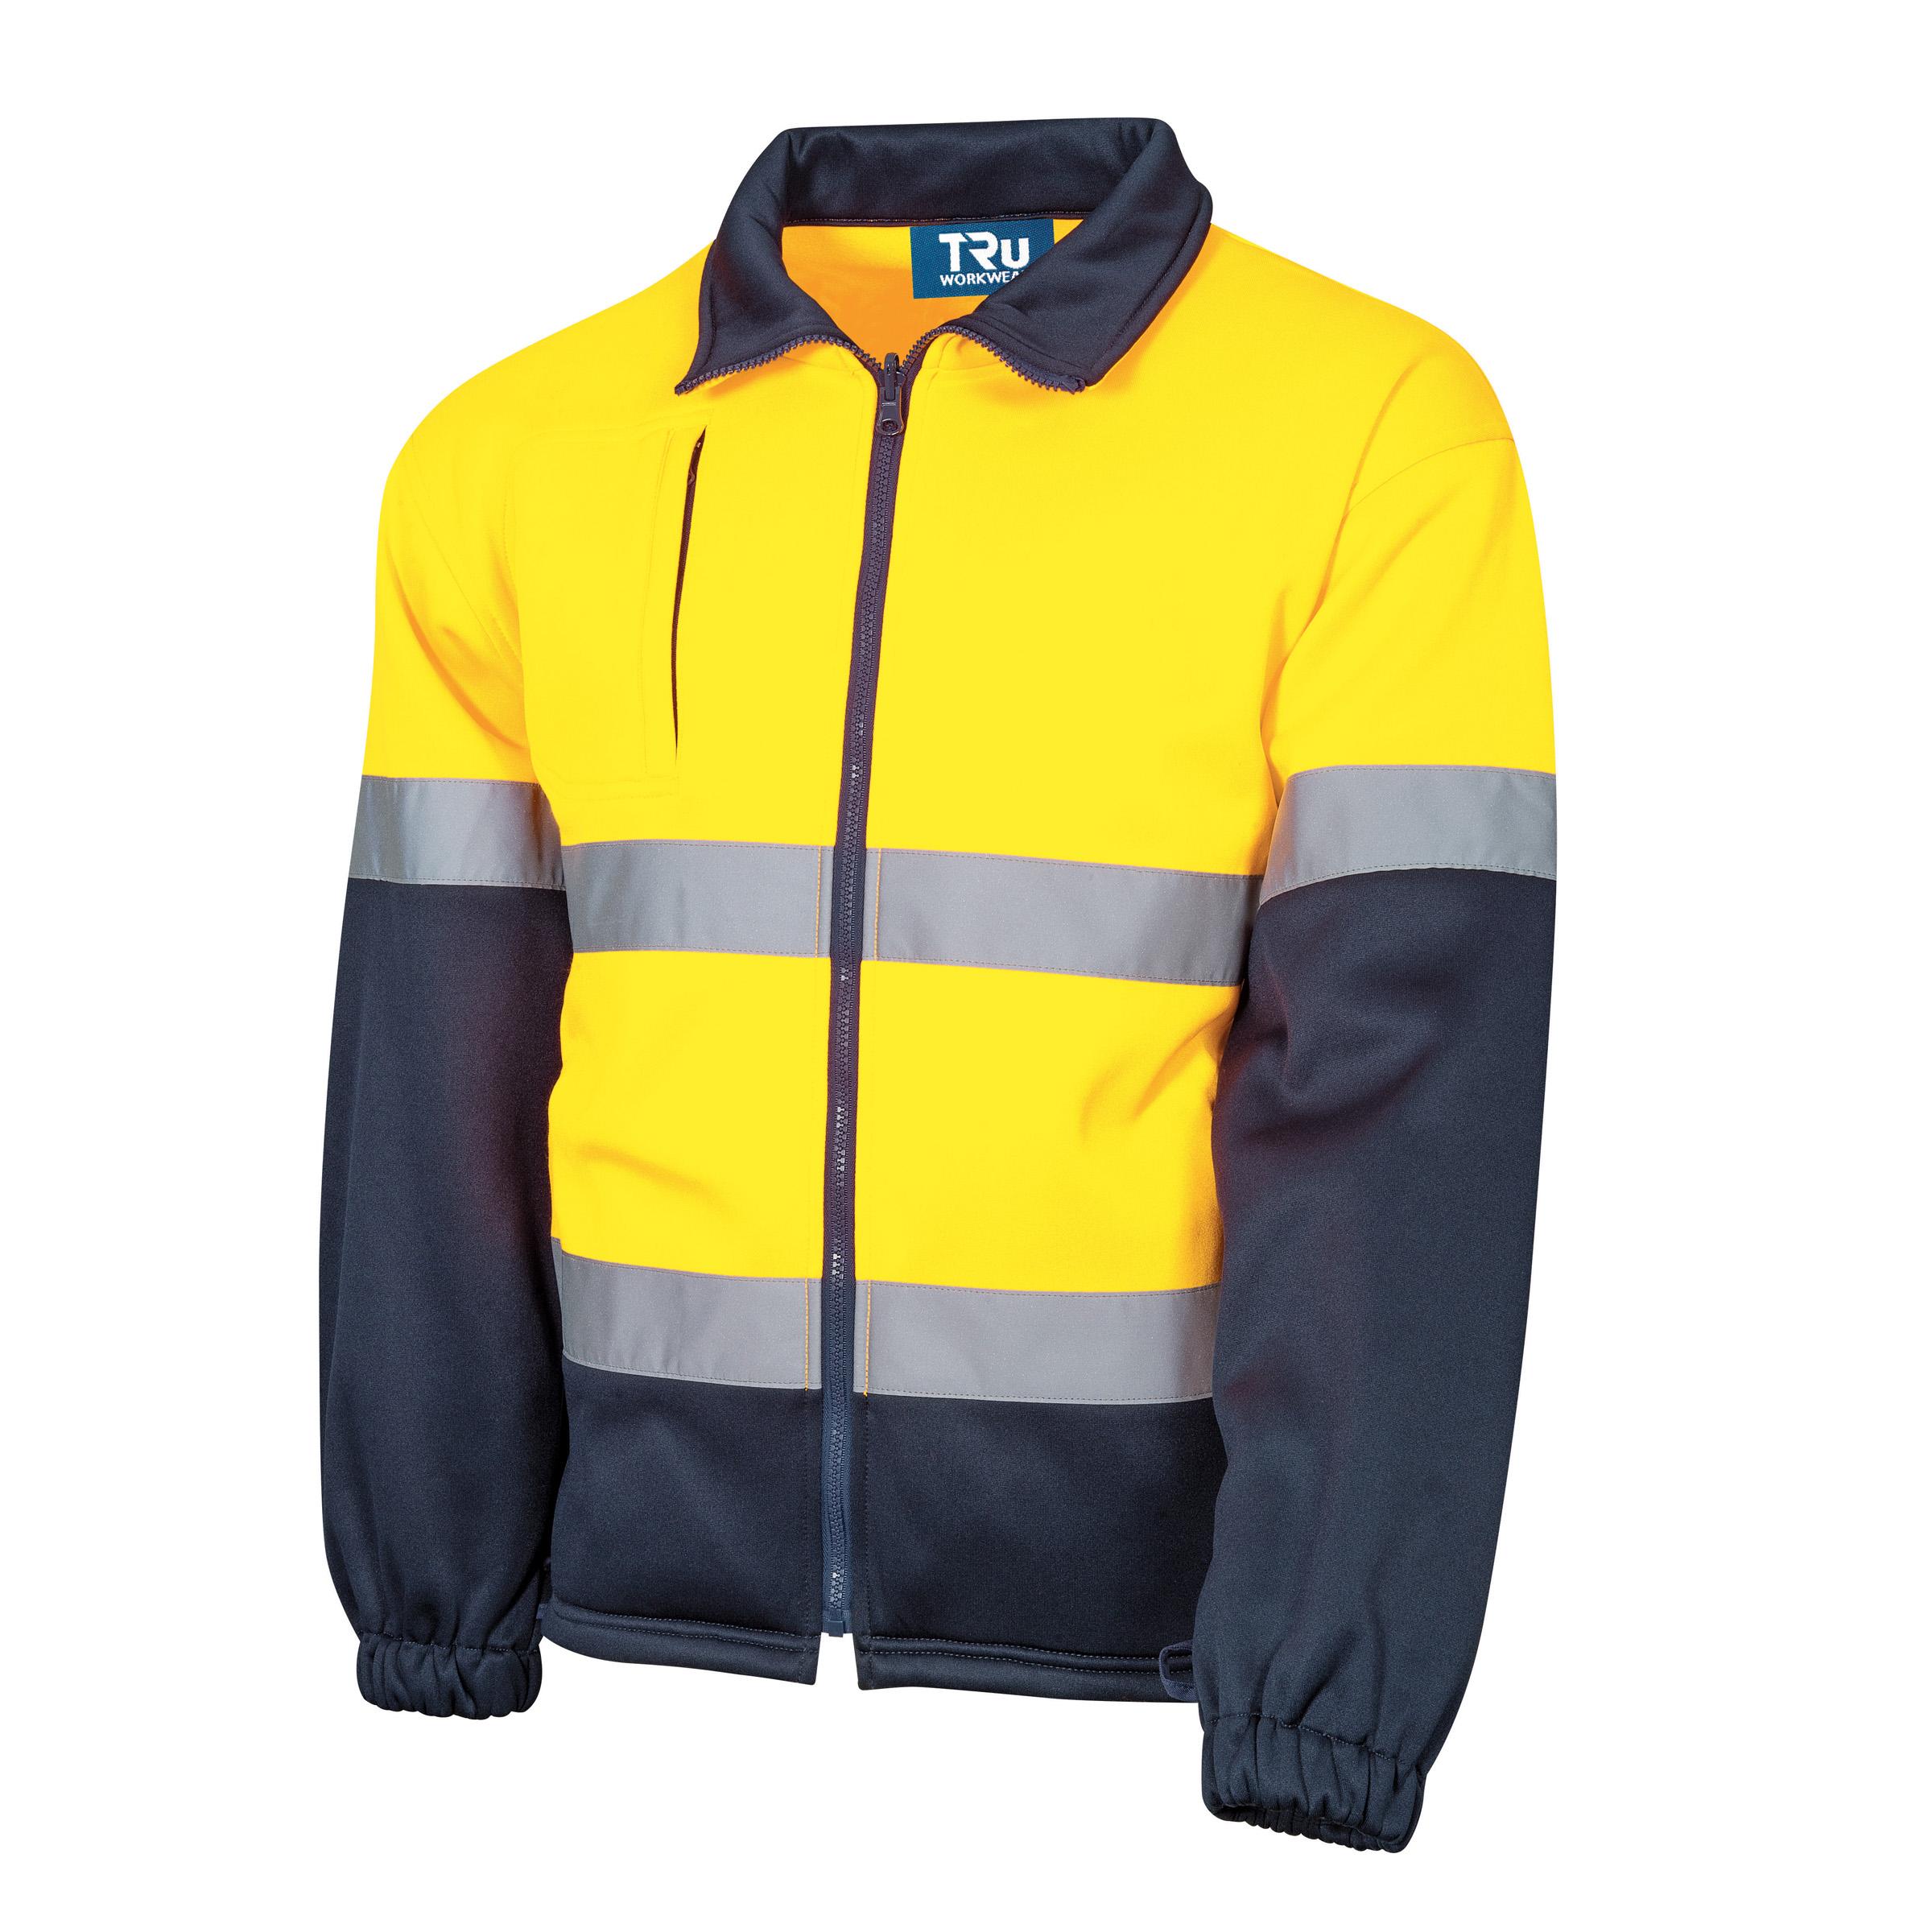 Tru Workwear Full Zip Water Repellent Fleece Jacket With Reflective Tape-Tru Workwear